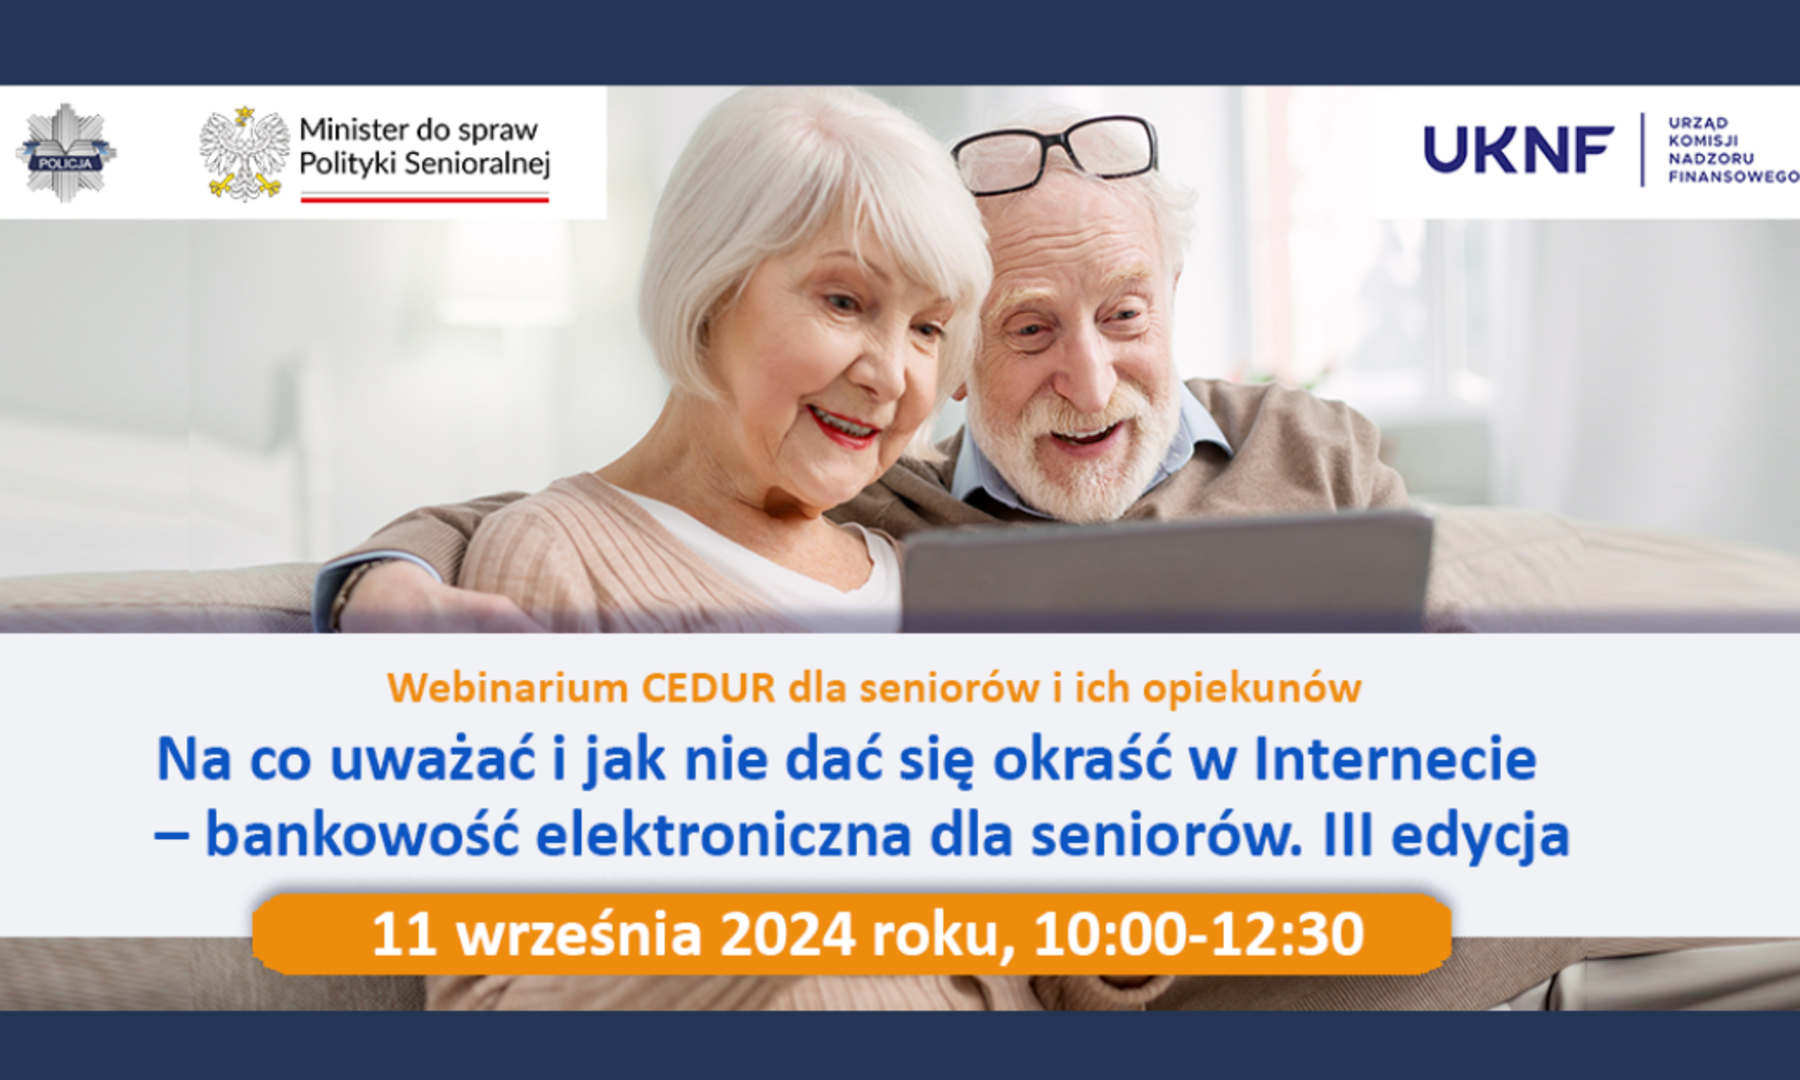 Webinarium CEDUR dla seniorów i ich opiekunów
Na co uważać i jak nie dać się okraść w Internecie
- bankowość elektroniczna dla seniorów. III edycja
11 września 2024 roku, 10:00-12:30